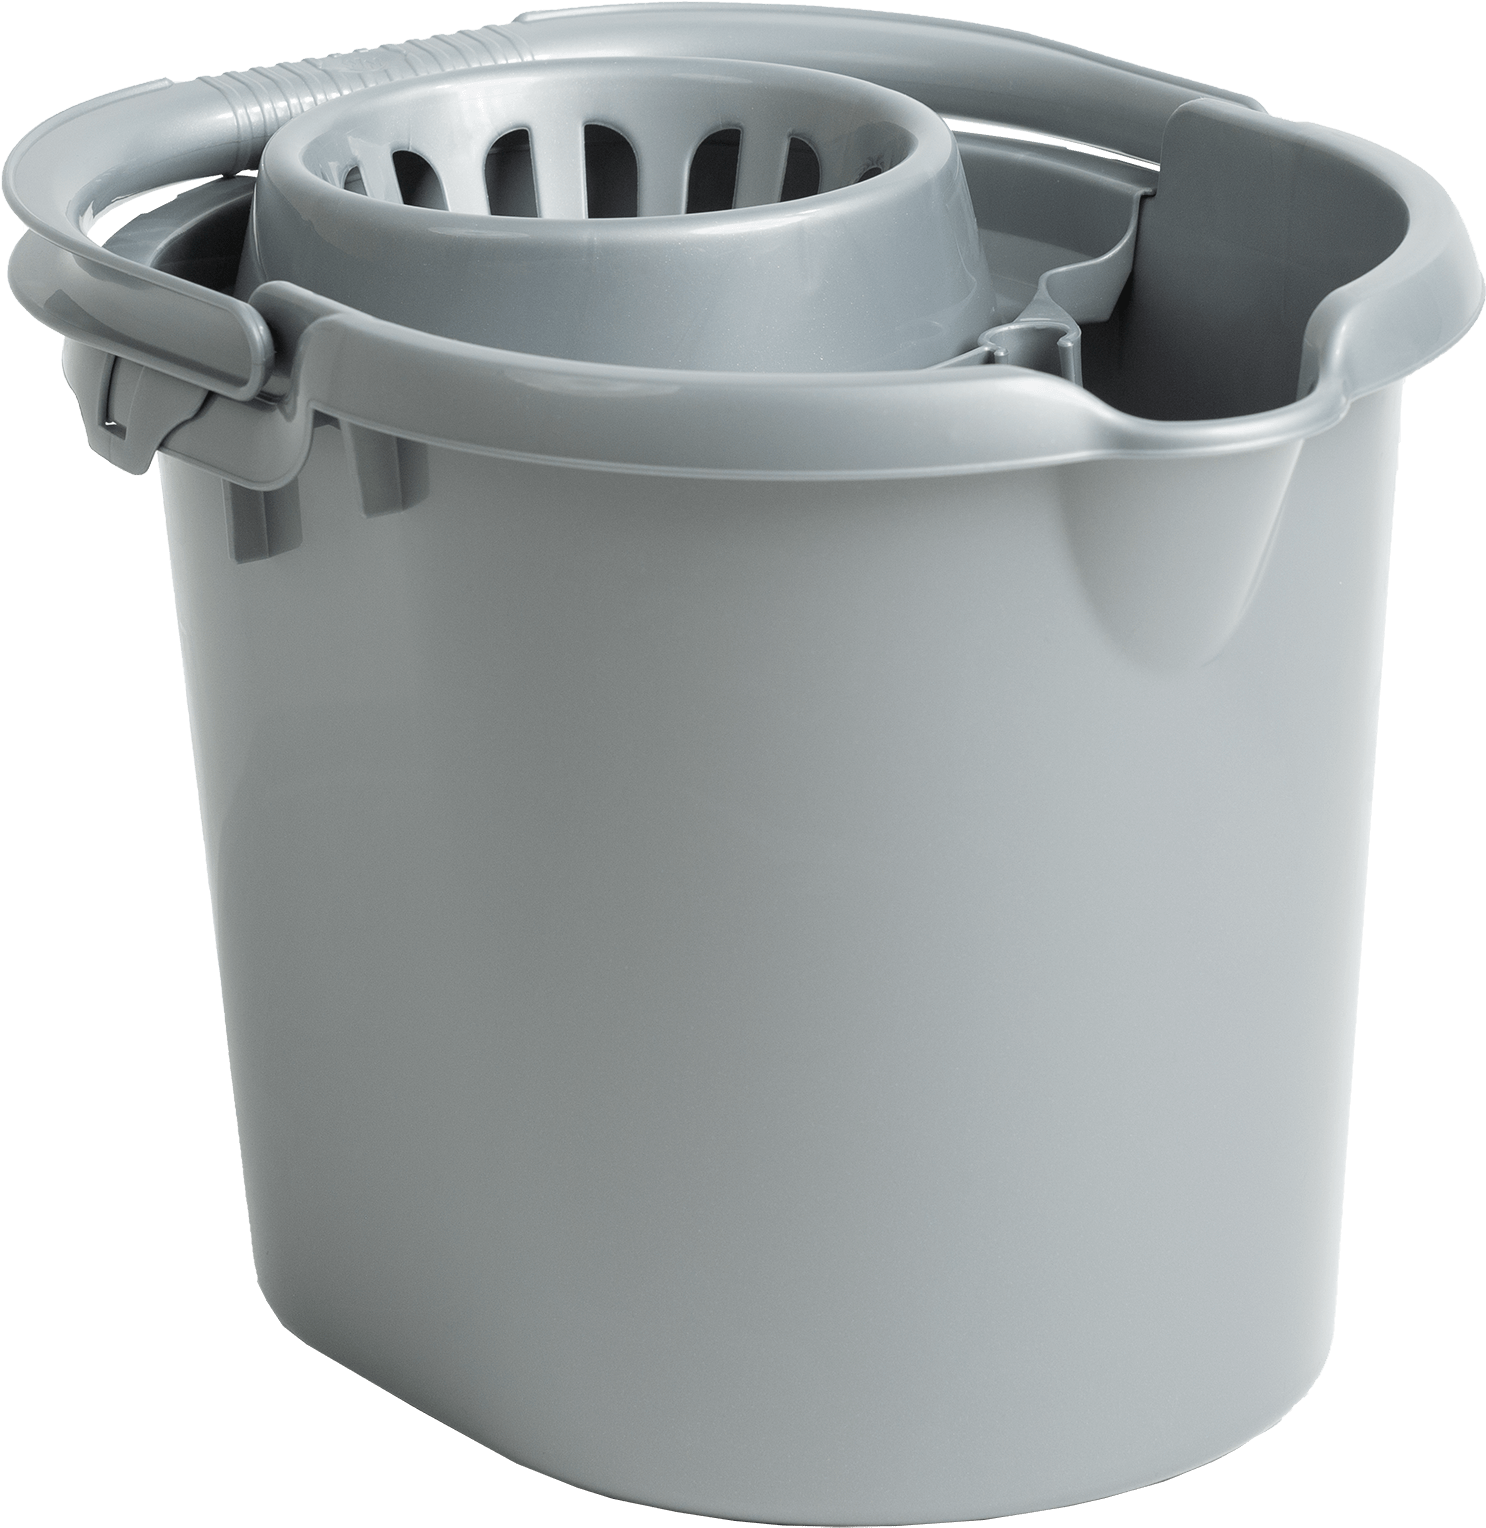 Plastic Bucket Png 1486 X 1528